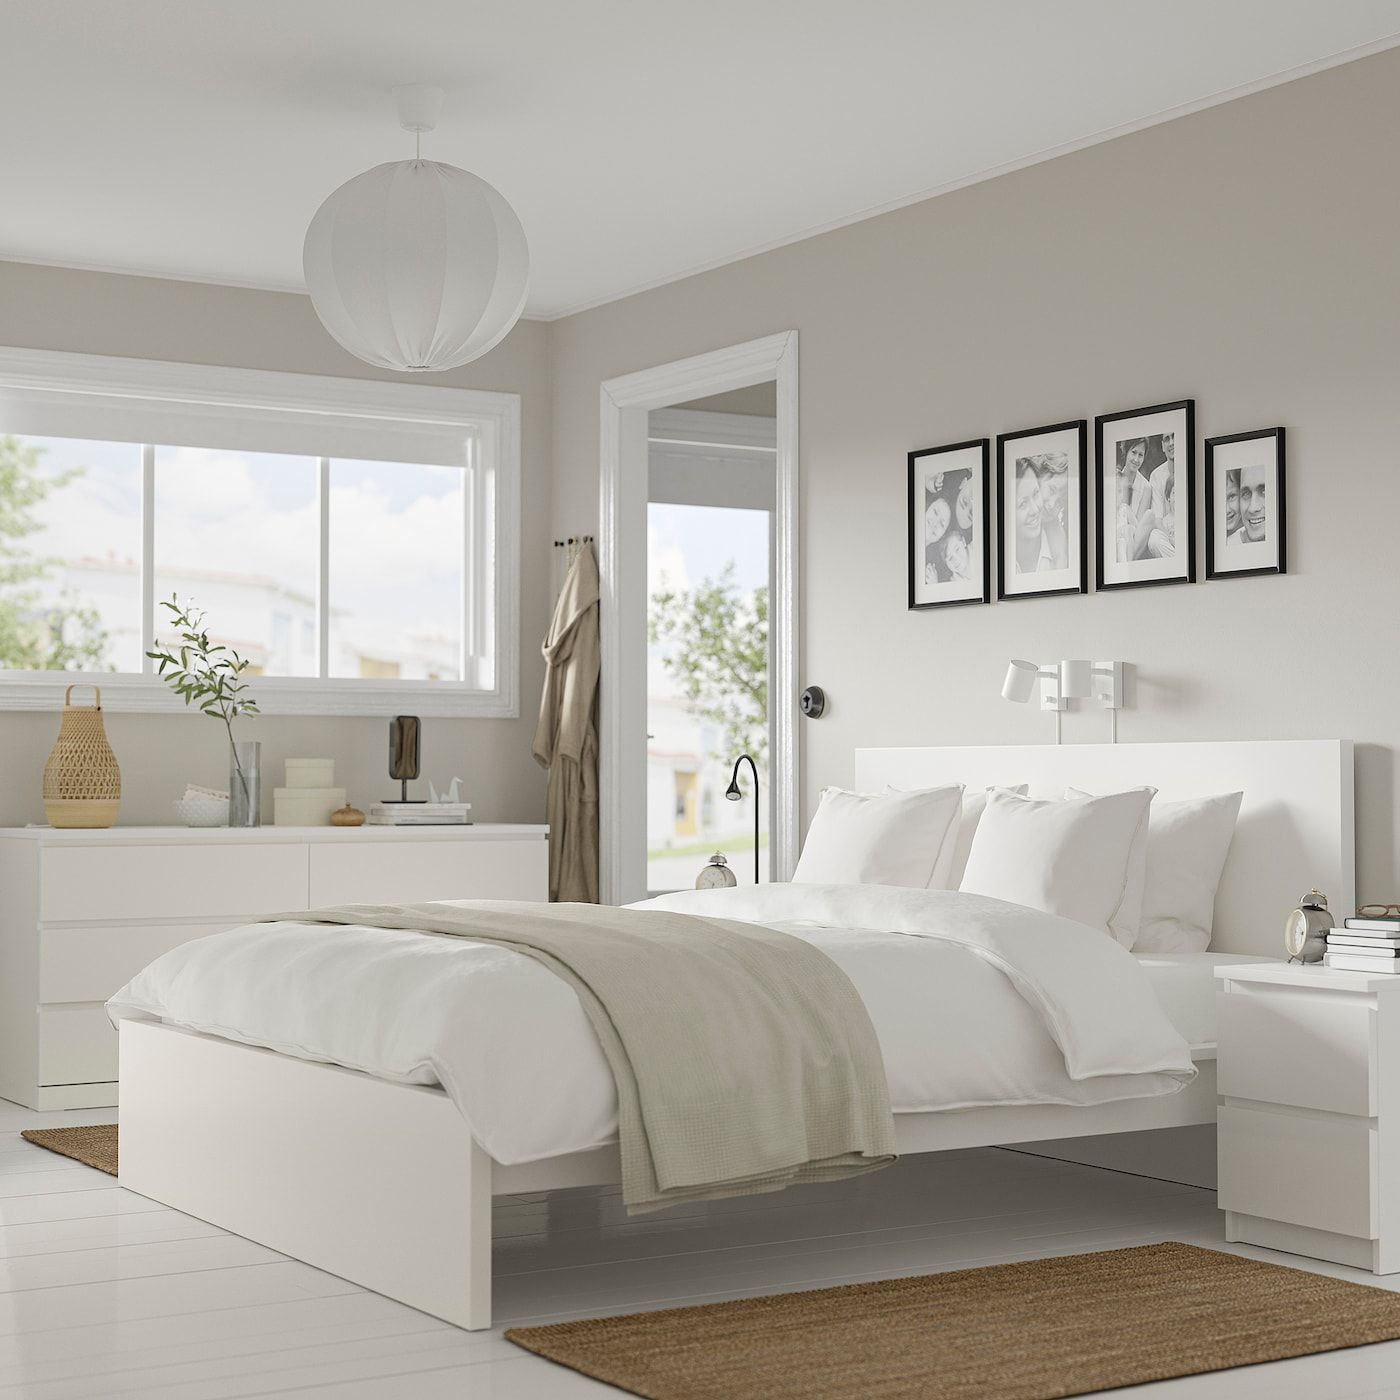 The Elegance of White Bedroom Furniture Sets